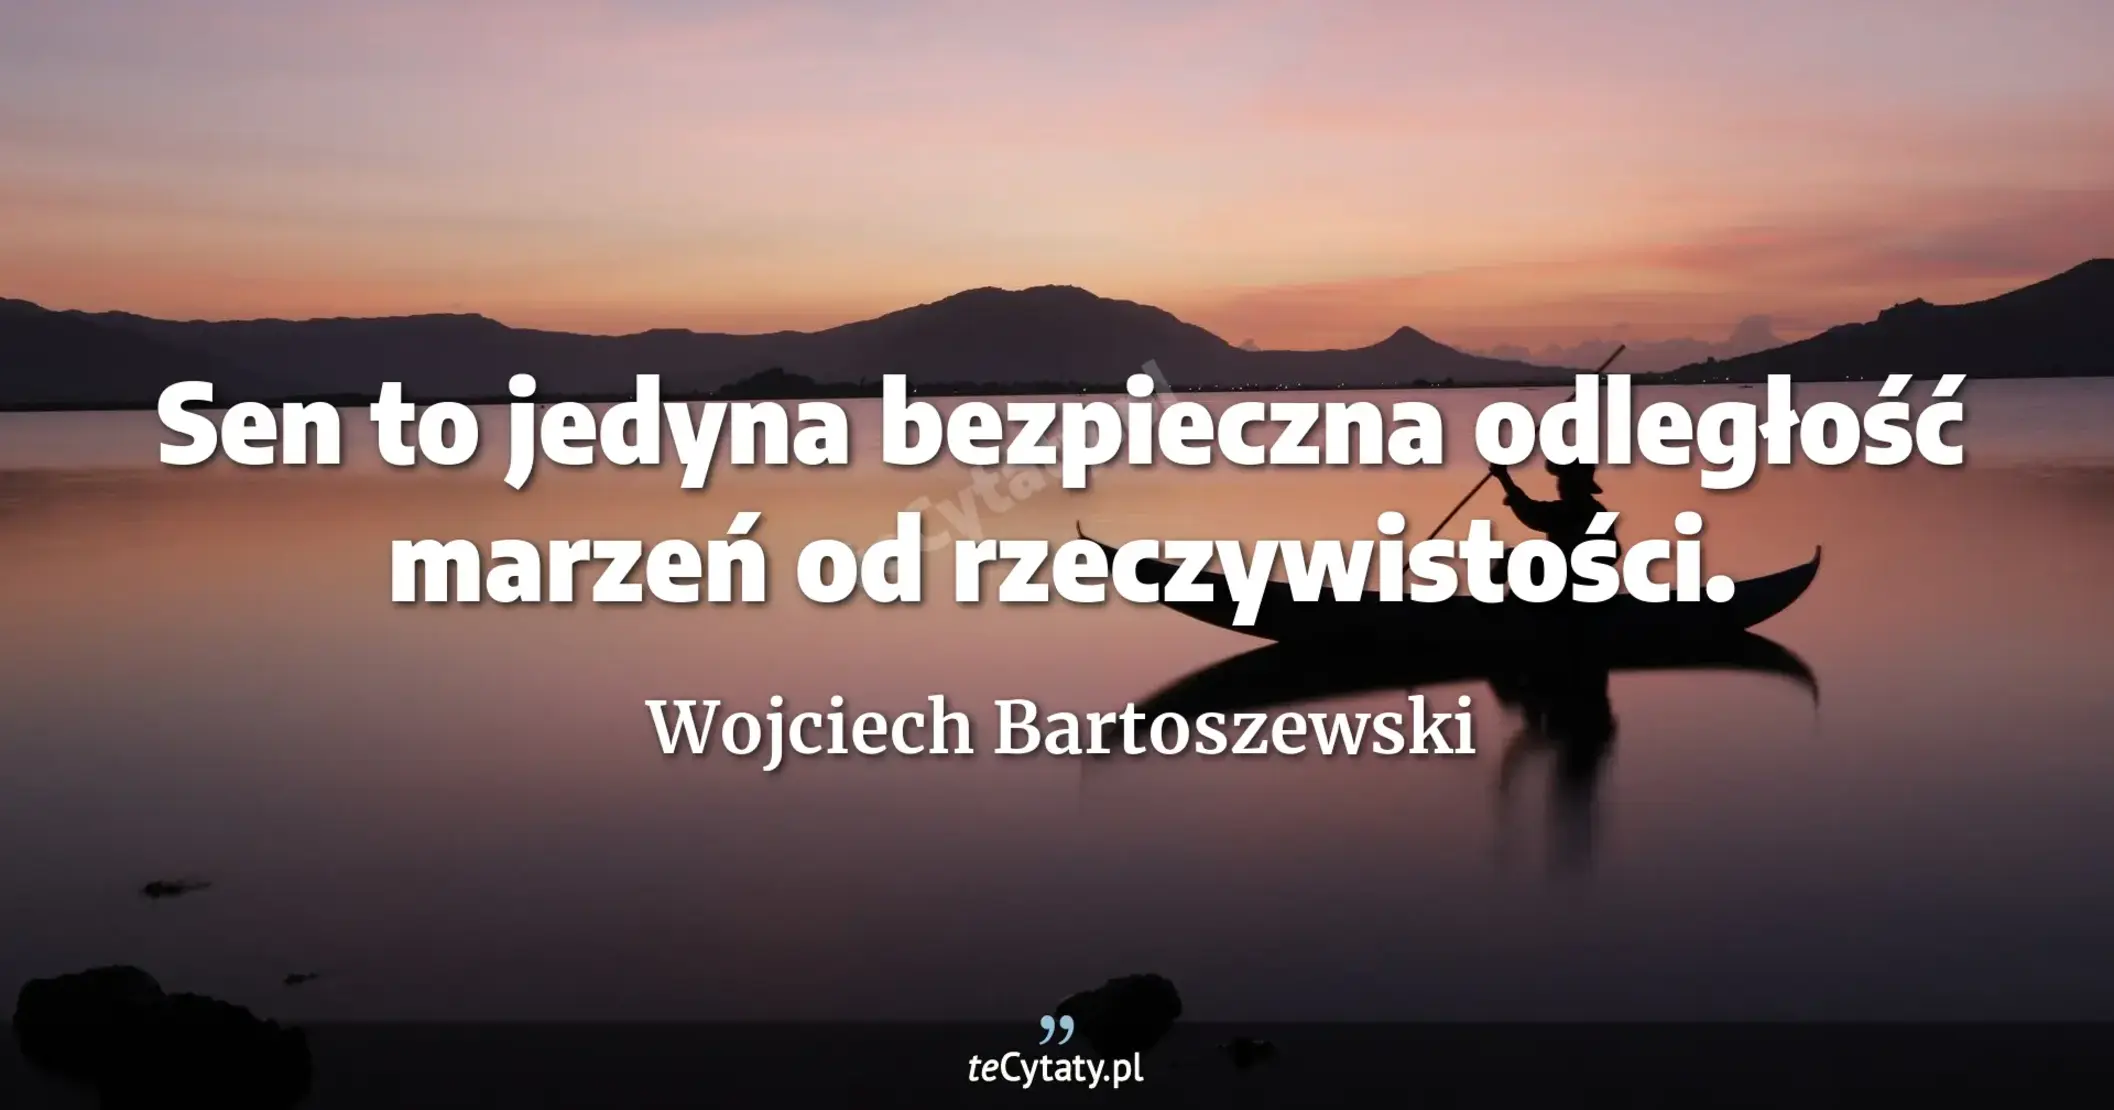 Sen to jedyna bezpieczna odległość marzeń od rzeczywistości. - Wojciech Bartoszewski